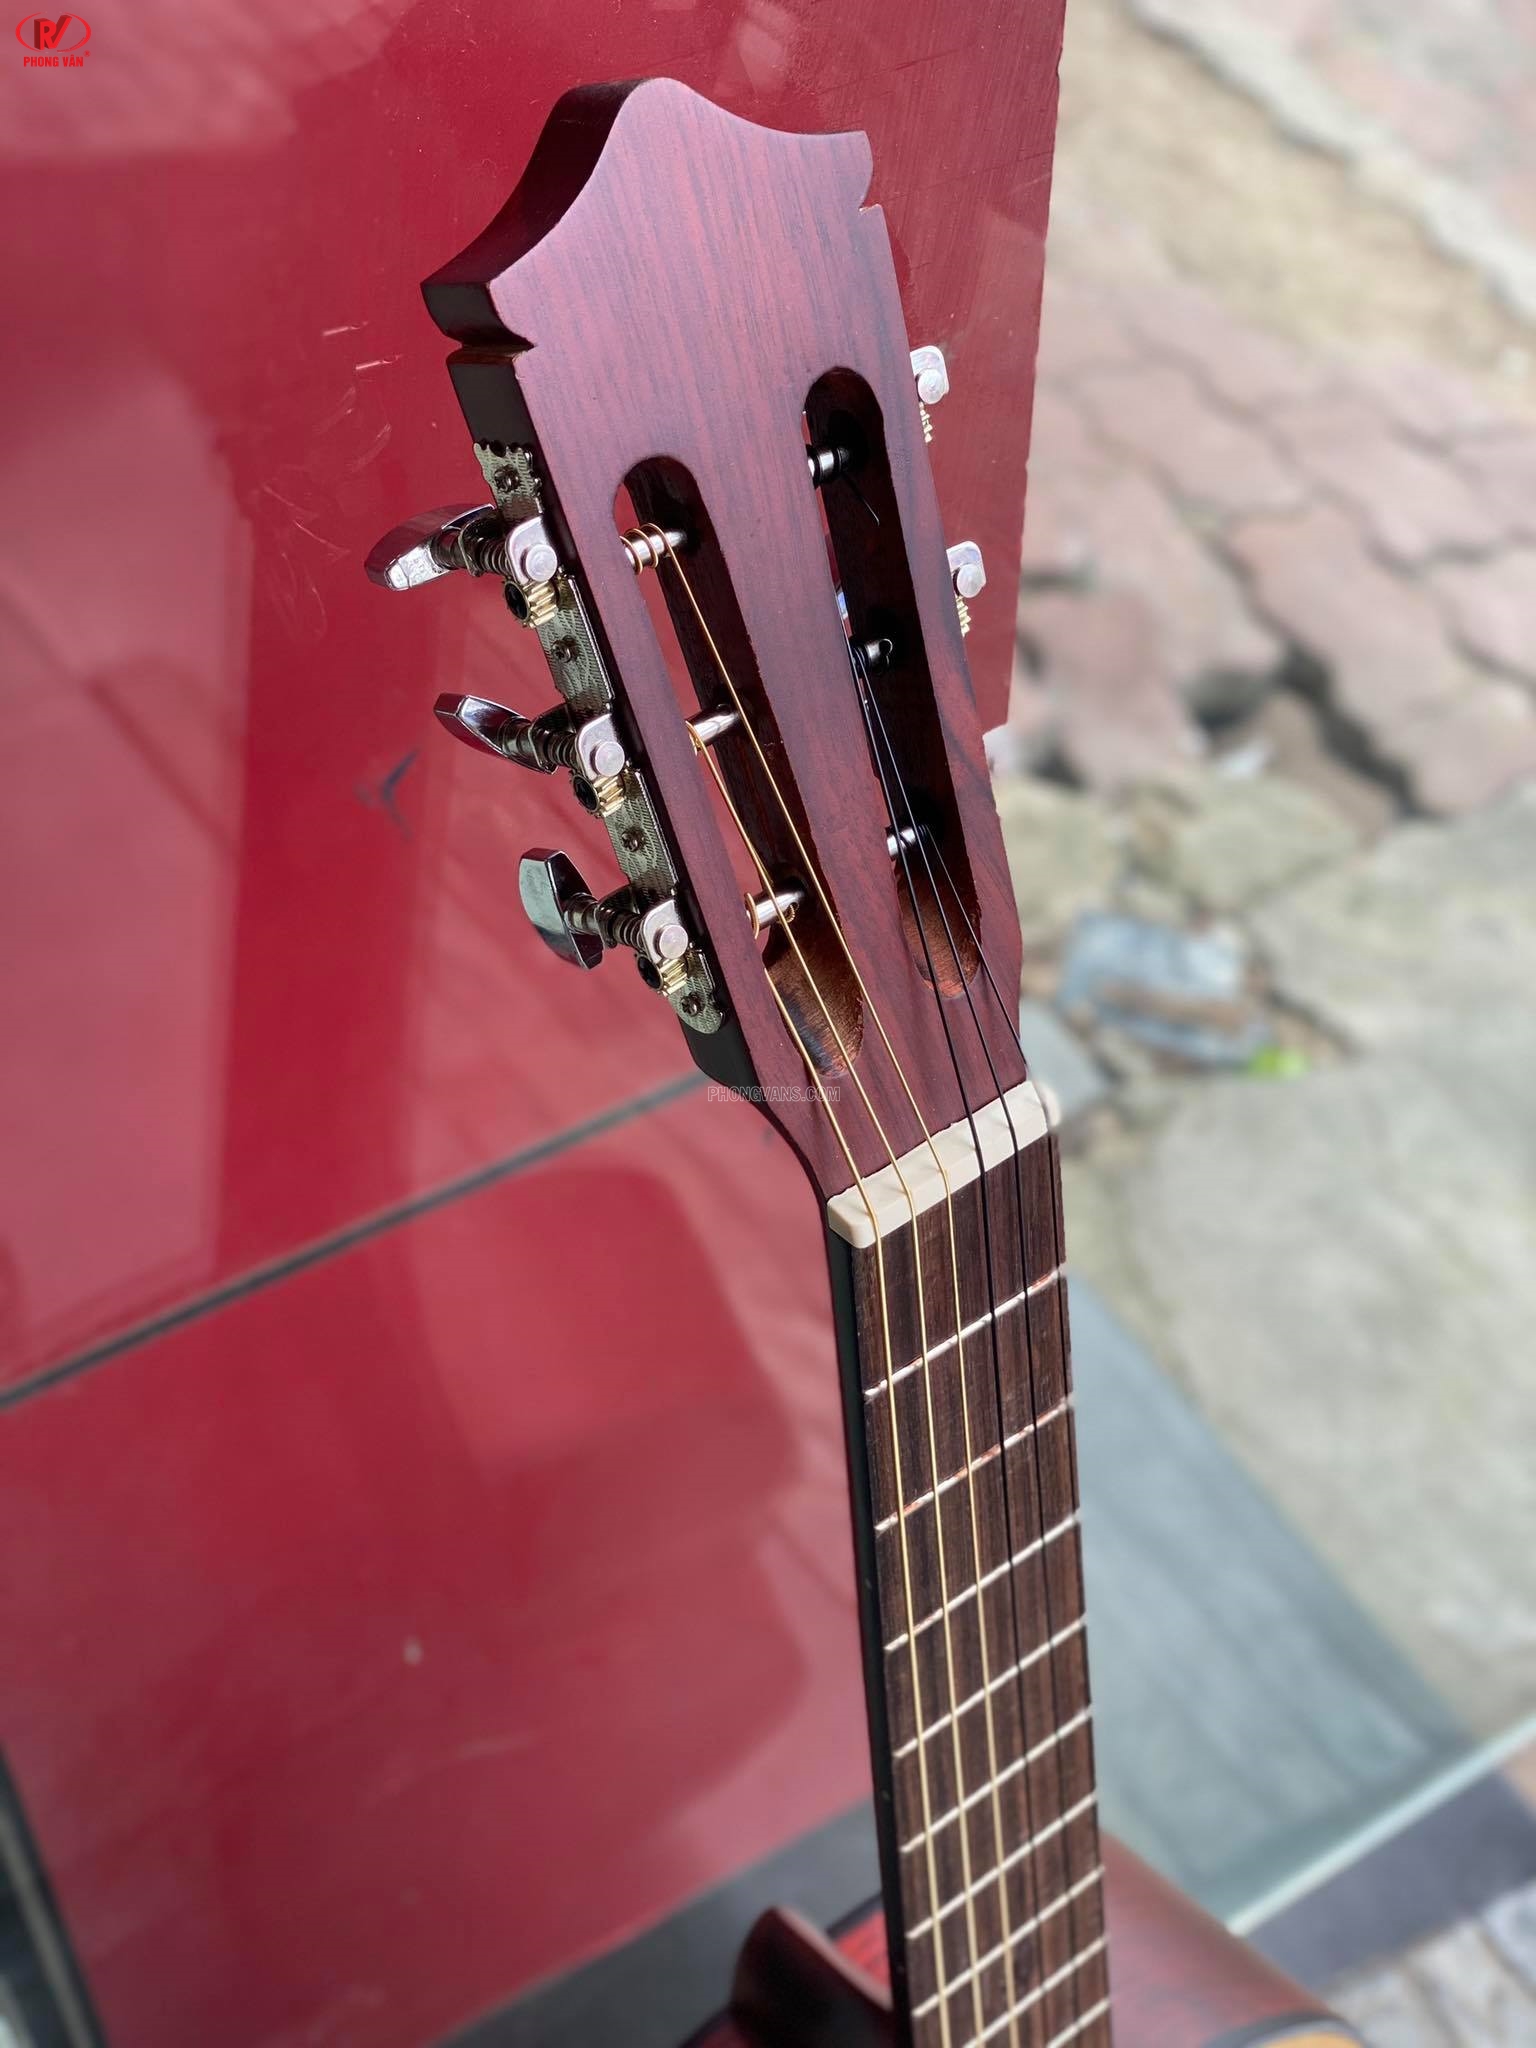 Đàn guitar classtic hồng đào có ty size 39